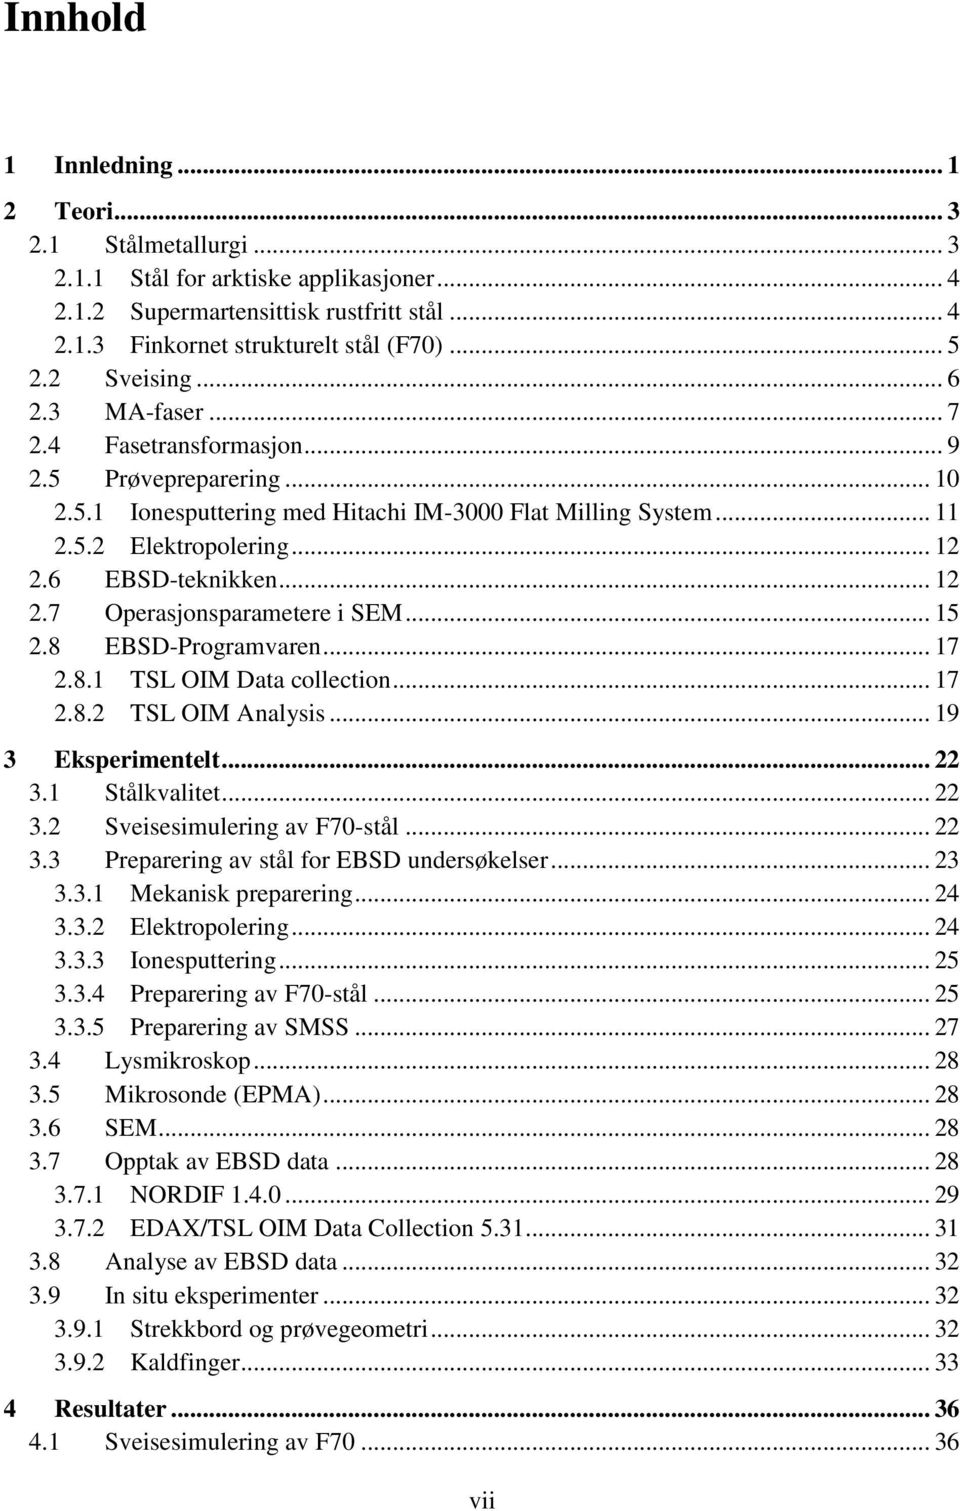 6 EBSD-teknikken... 12 2.7 Operasjonsparametere i SEM... 15 2.8 EBSD-Programvaren... 17 2.8.1 TSL OIM Data collection... 17 2.8.2 TSL OIM Analysis... 19 3 Eksperimentelt... 22 3.